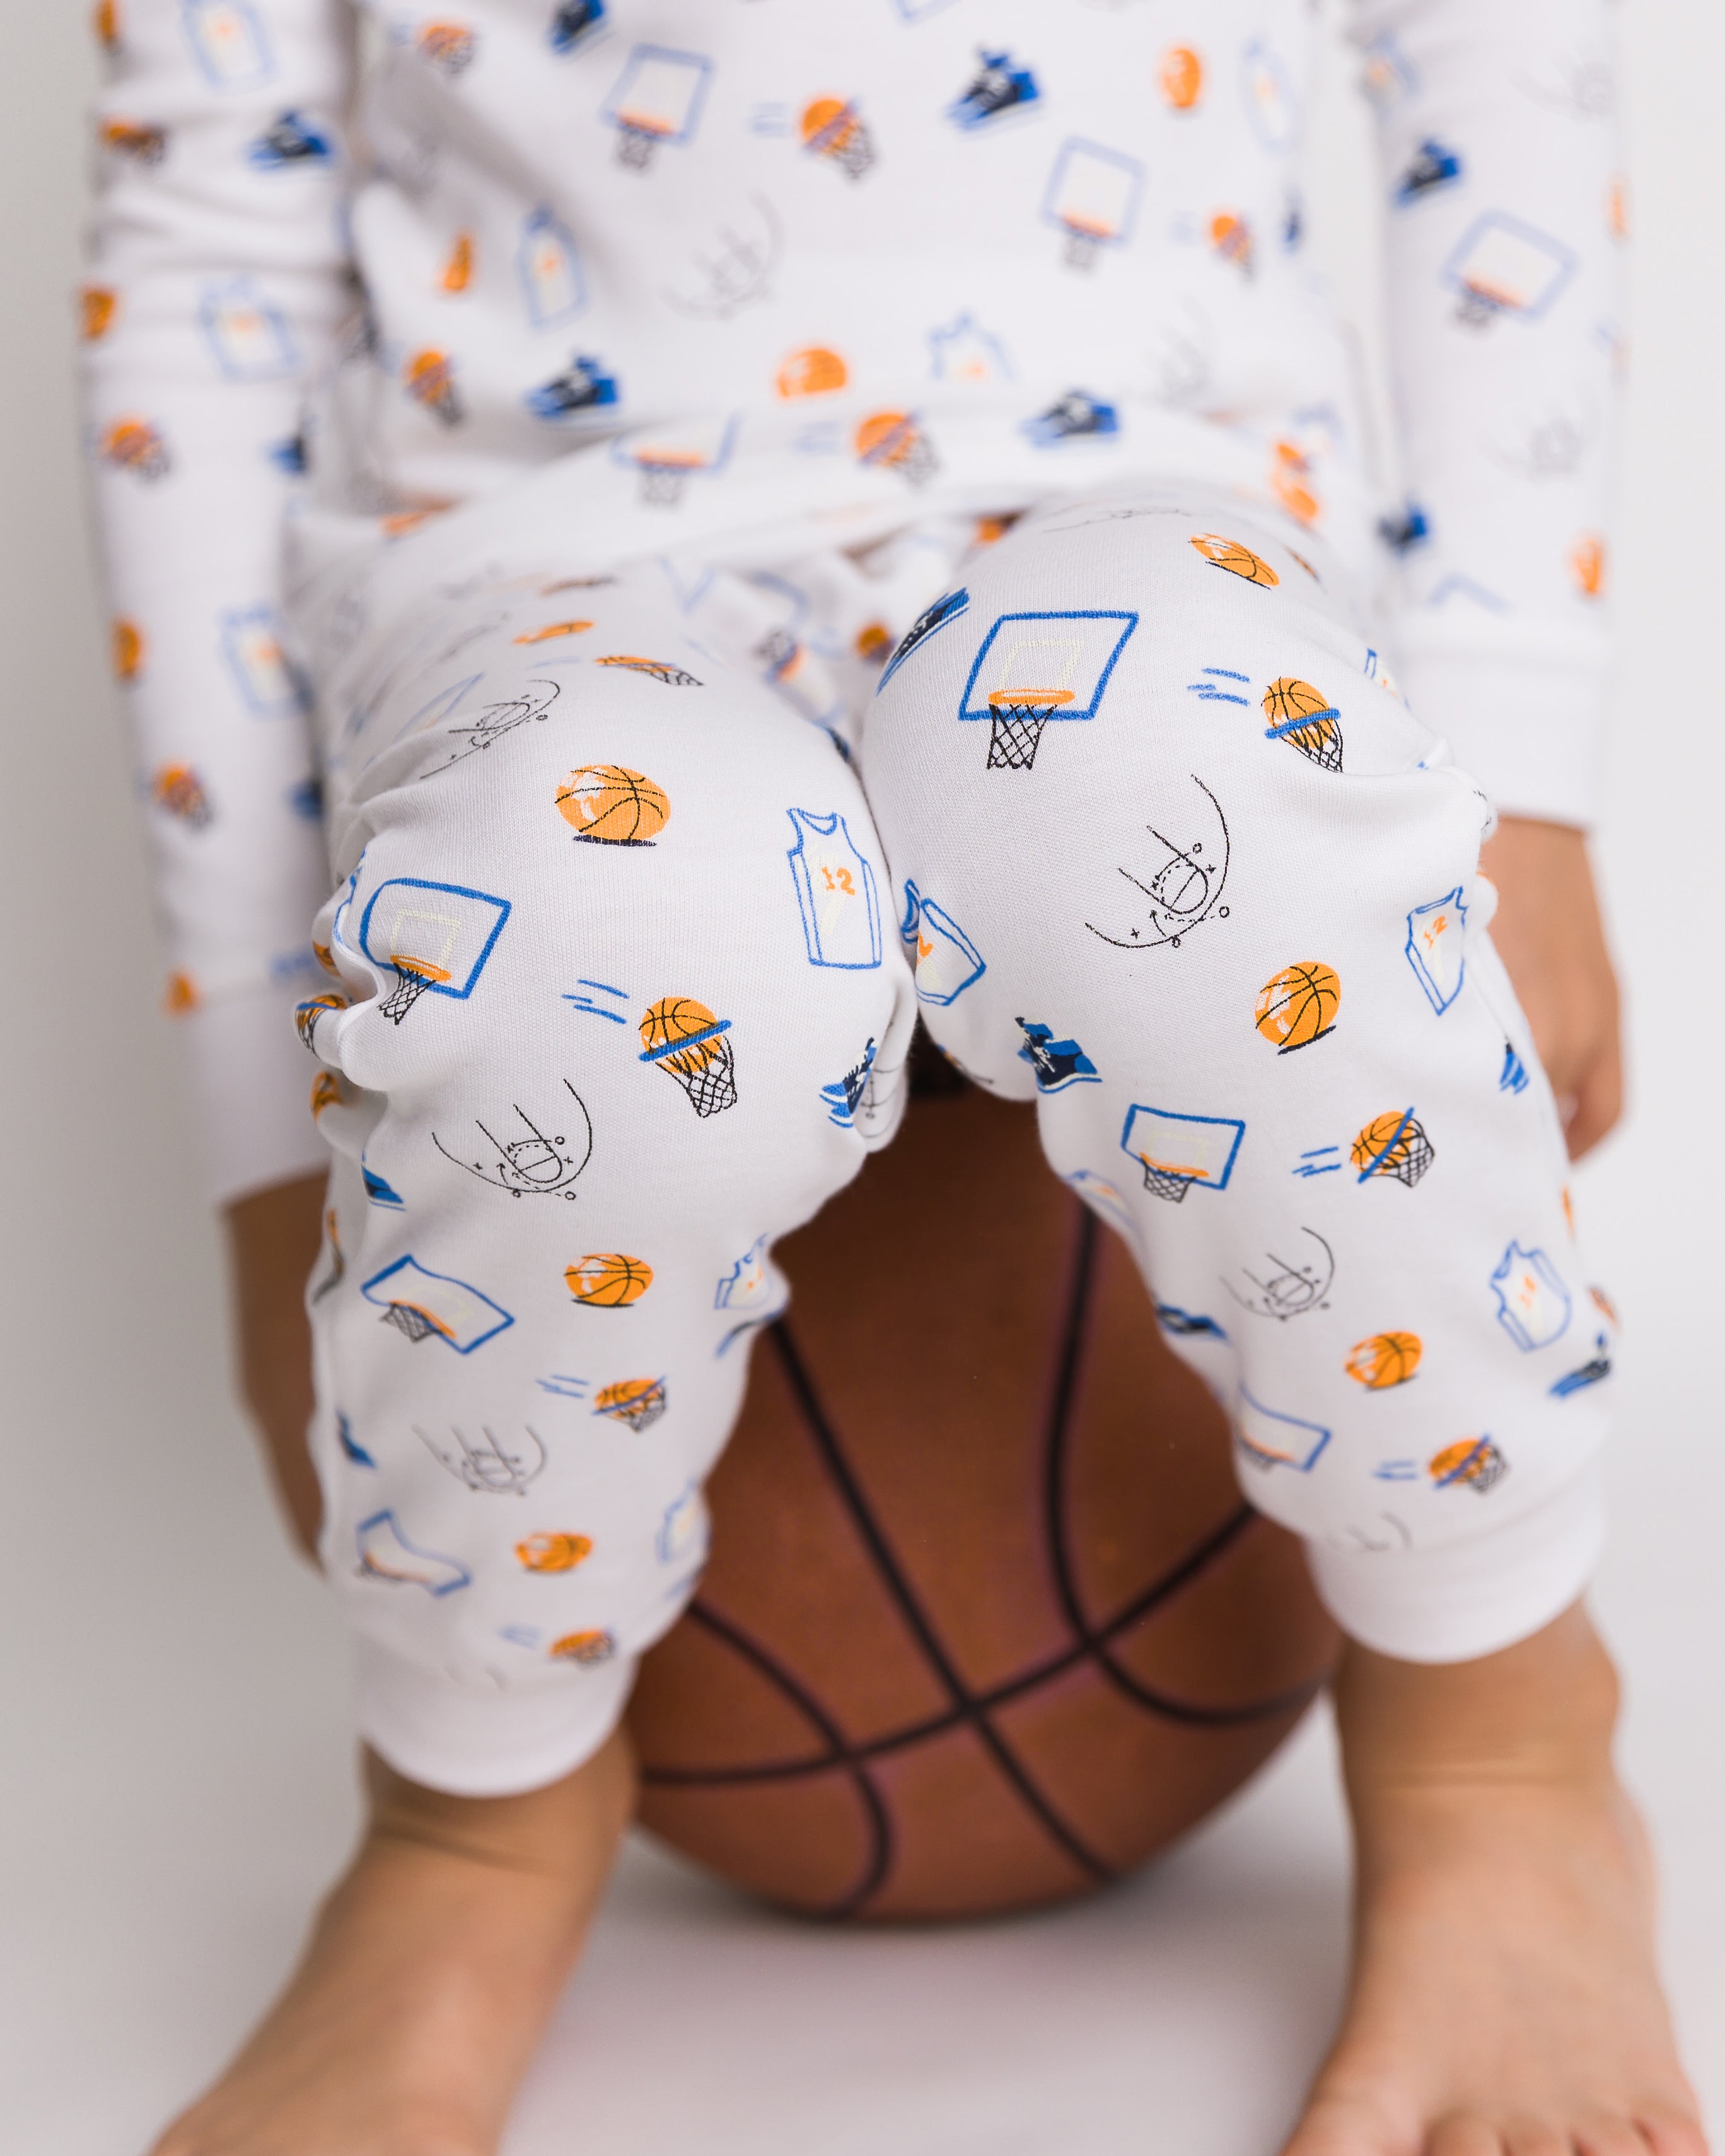 The Organic Long Sleeve Pajama Set [Basketball]